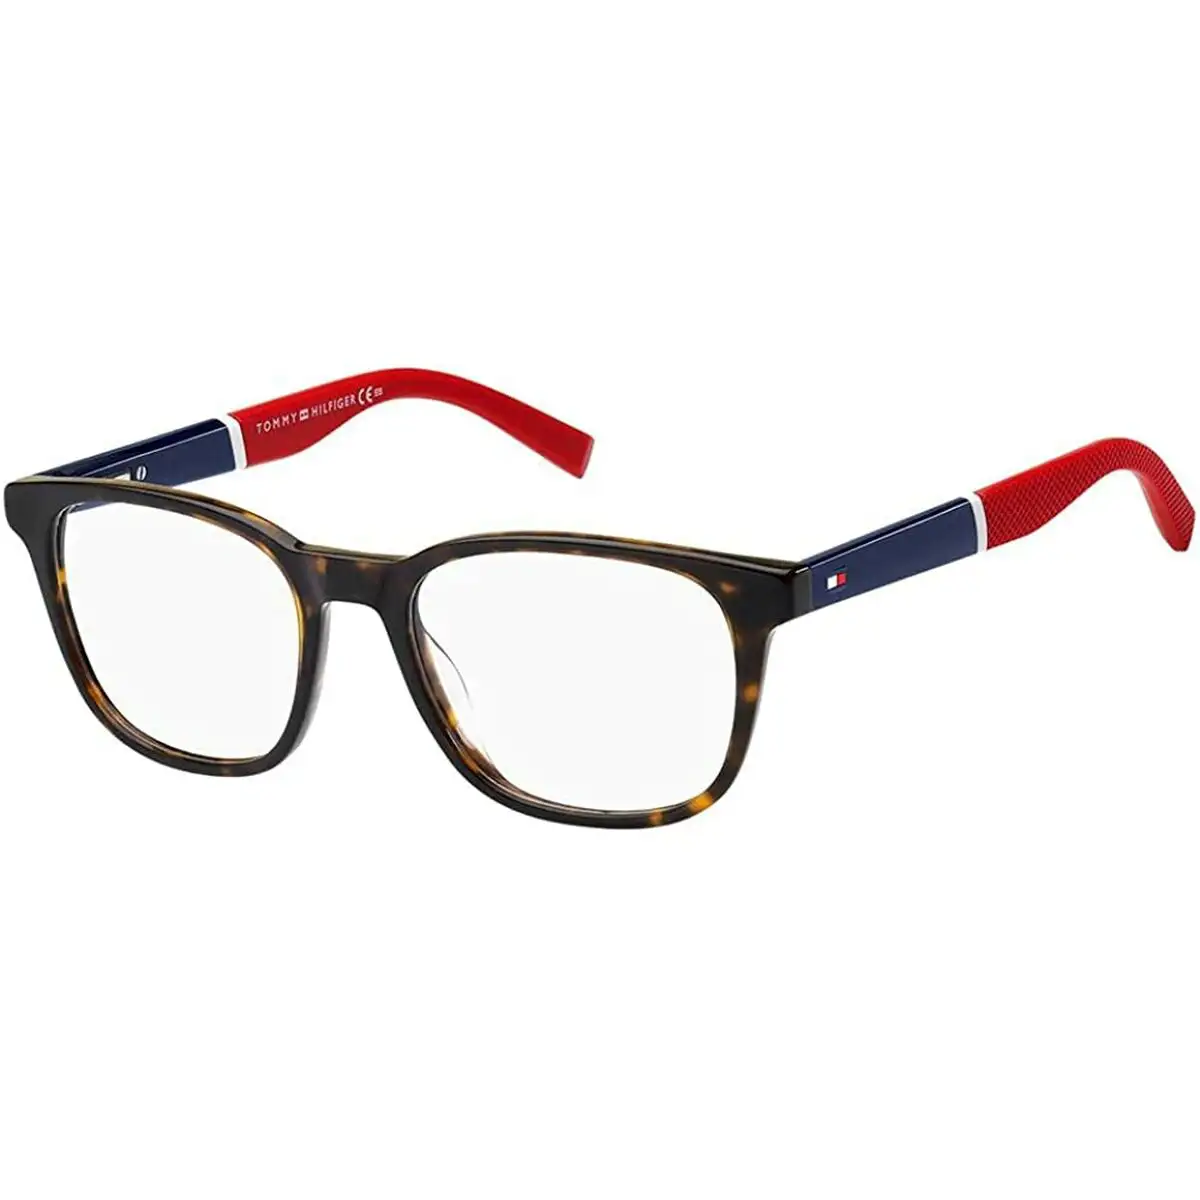 Monture de lunettes homme tommy hilfiger th 1907_8645. Bienvenue chez DIAYTAR SENEGAL - Où Votre Shopping Prend Vie. Découvrez notre univers et dénichez des trésors qui ajoutent de la couleur à votre quotidien.